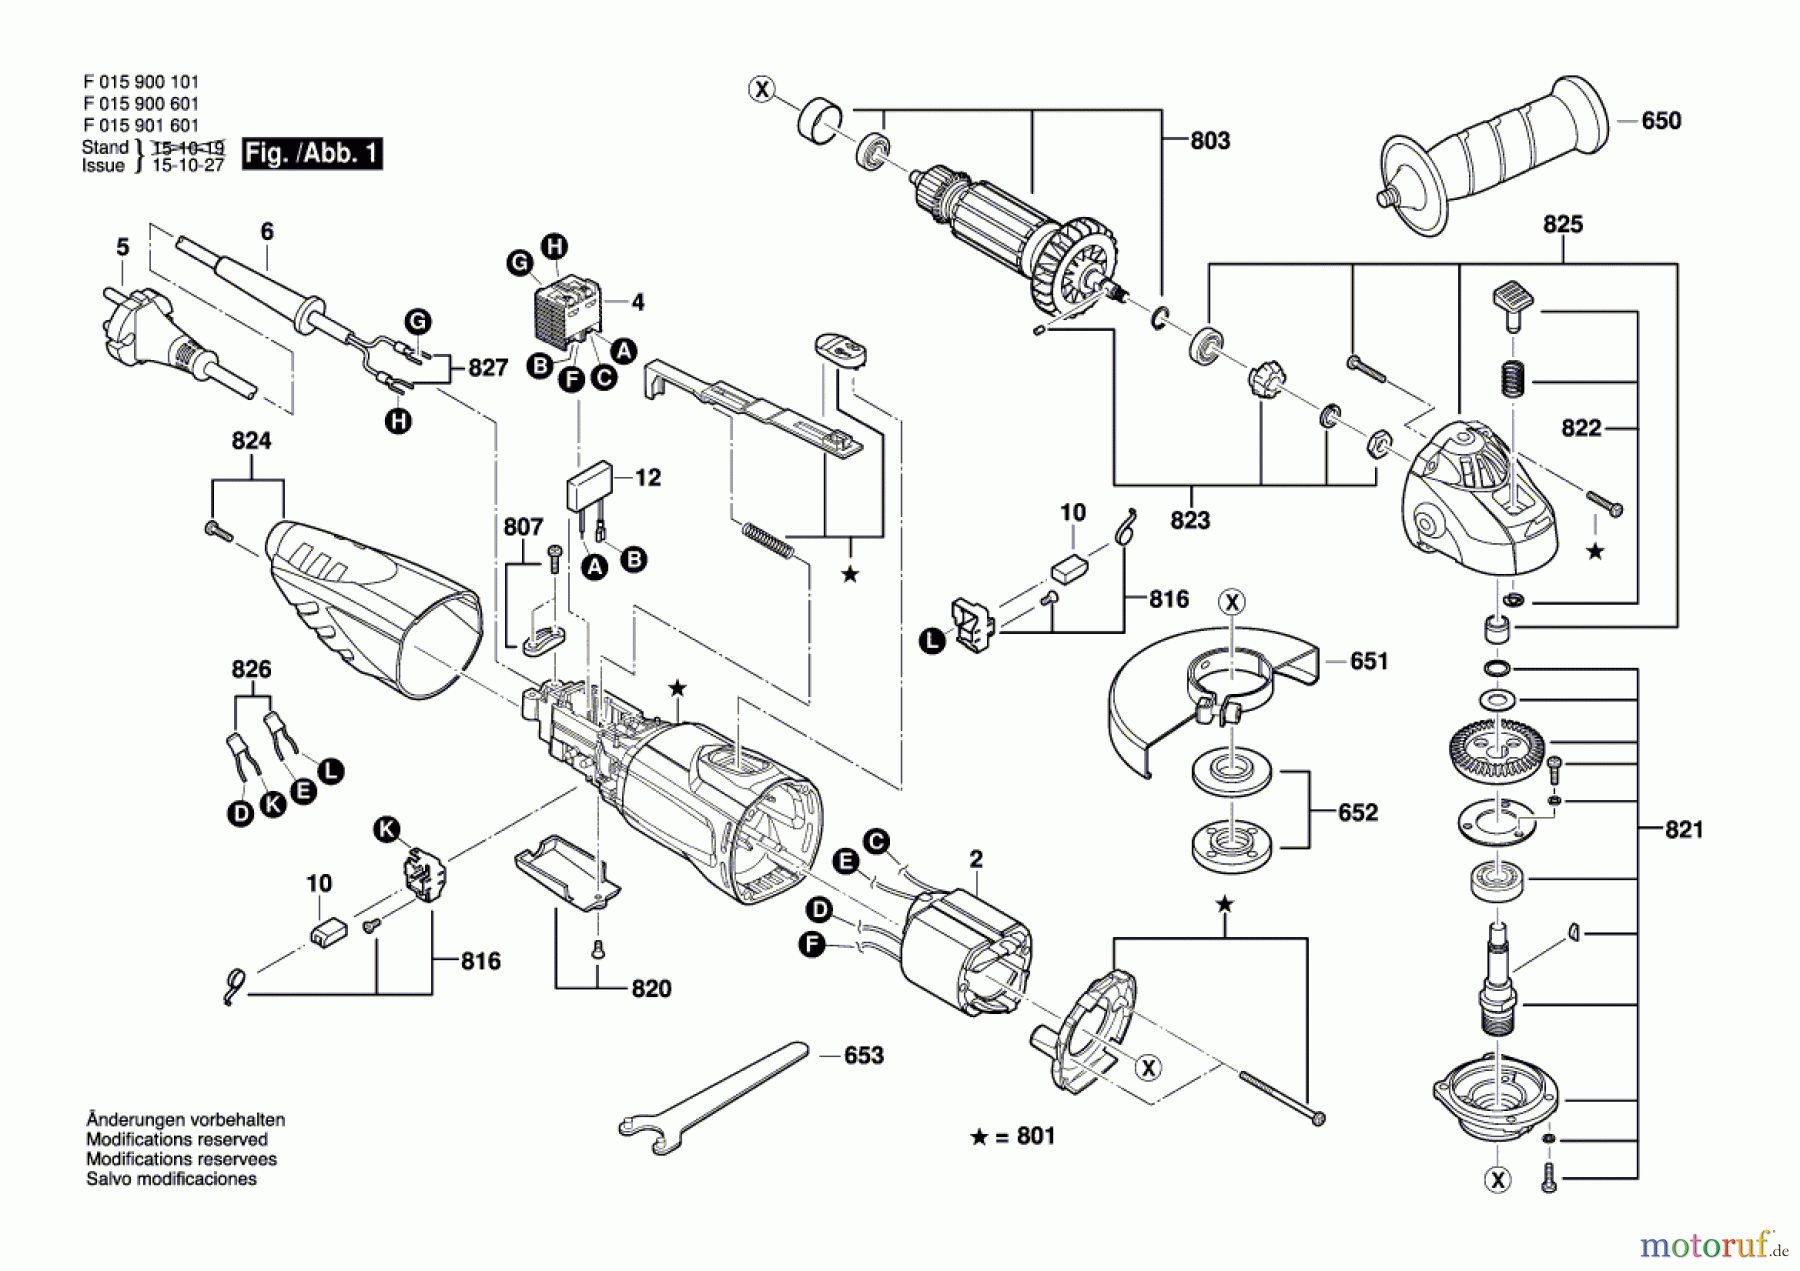  Bosch Werkzeug Pw-Winkelschleifer 9001 Seite 1